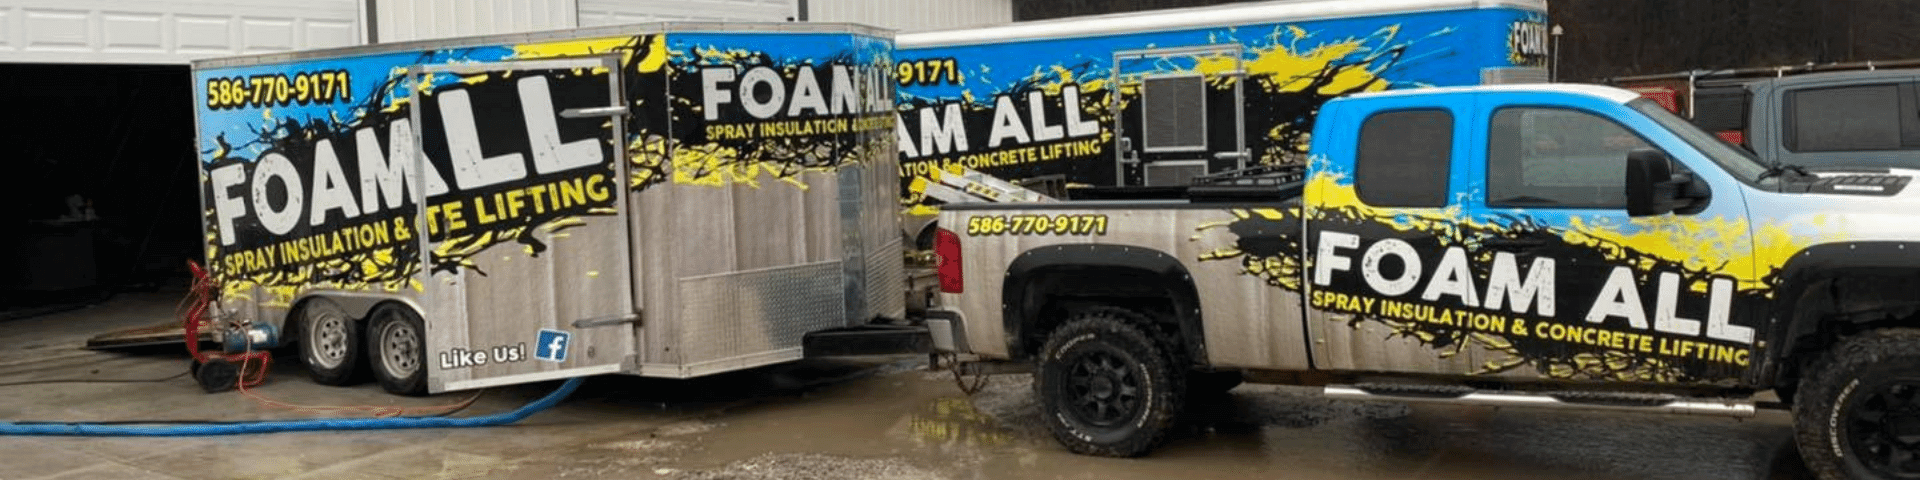 The Foam All team trucks.